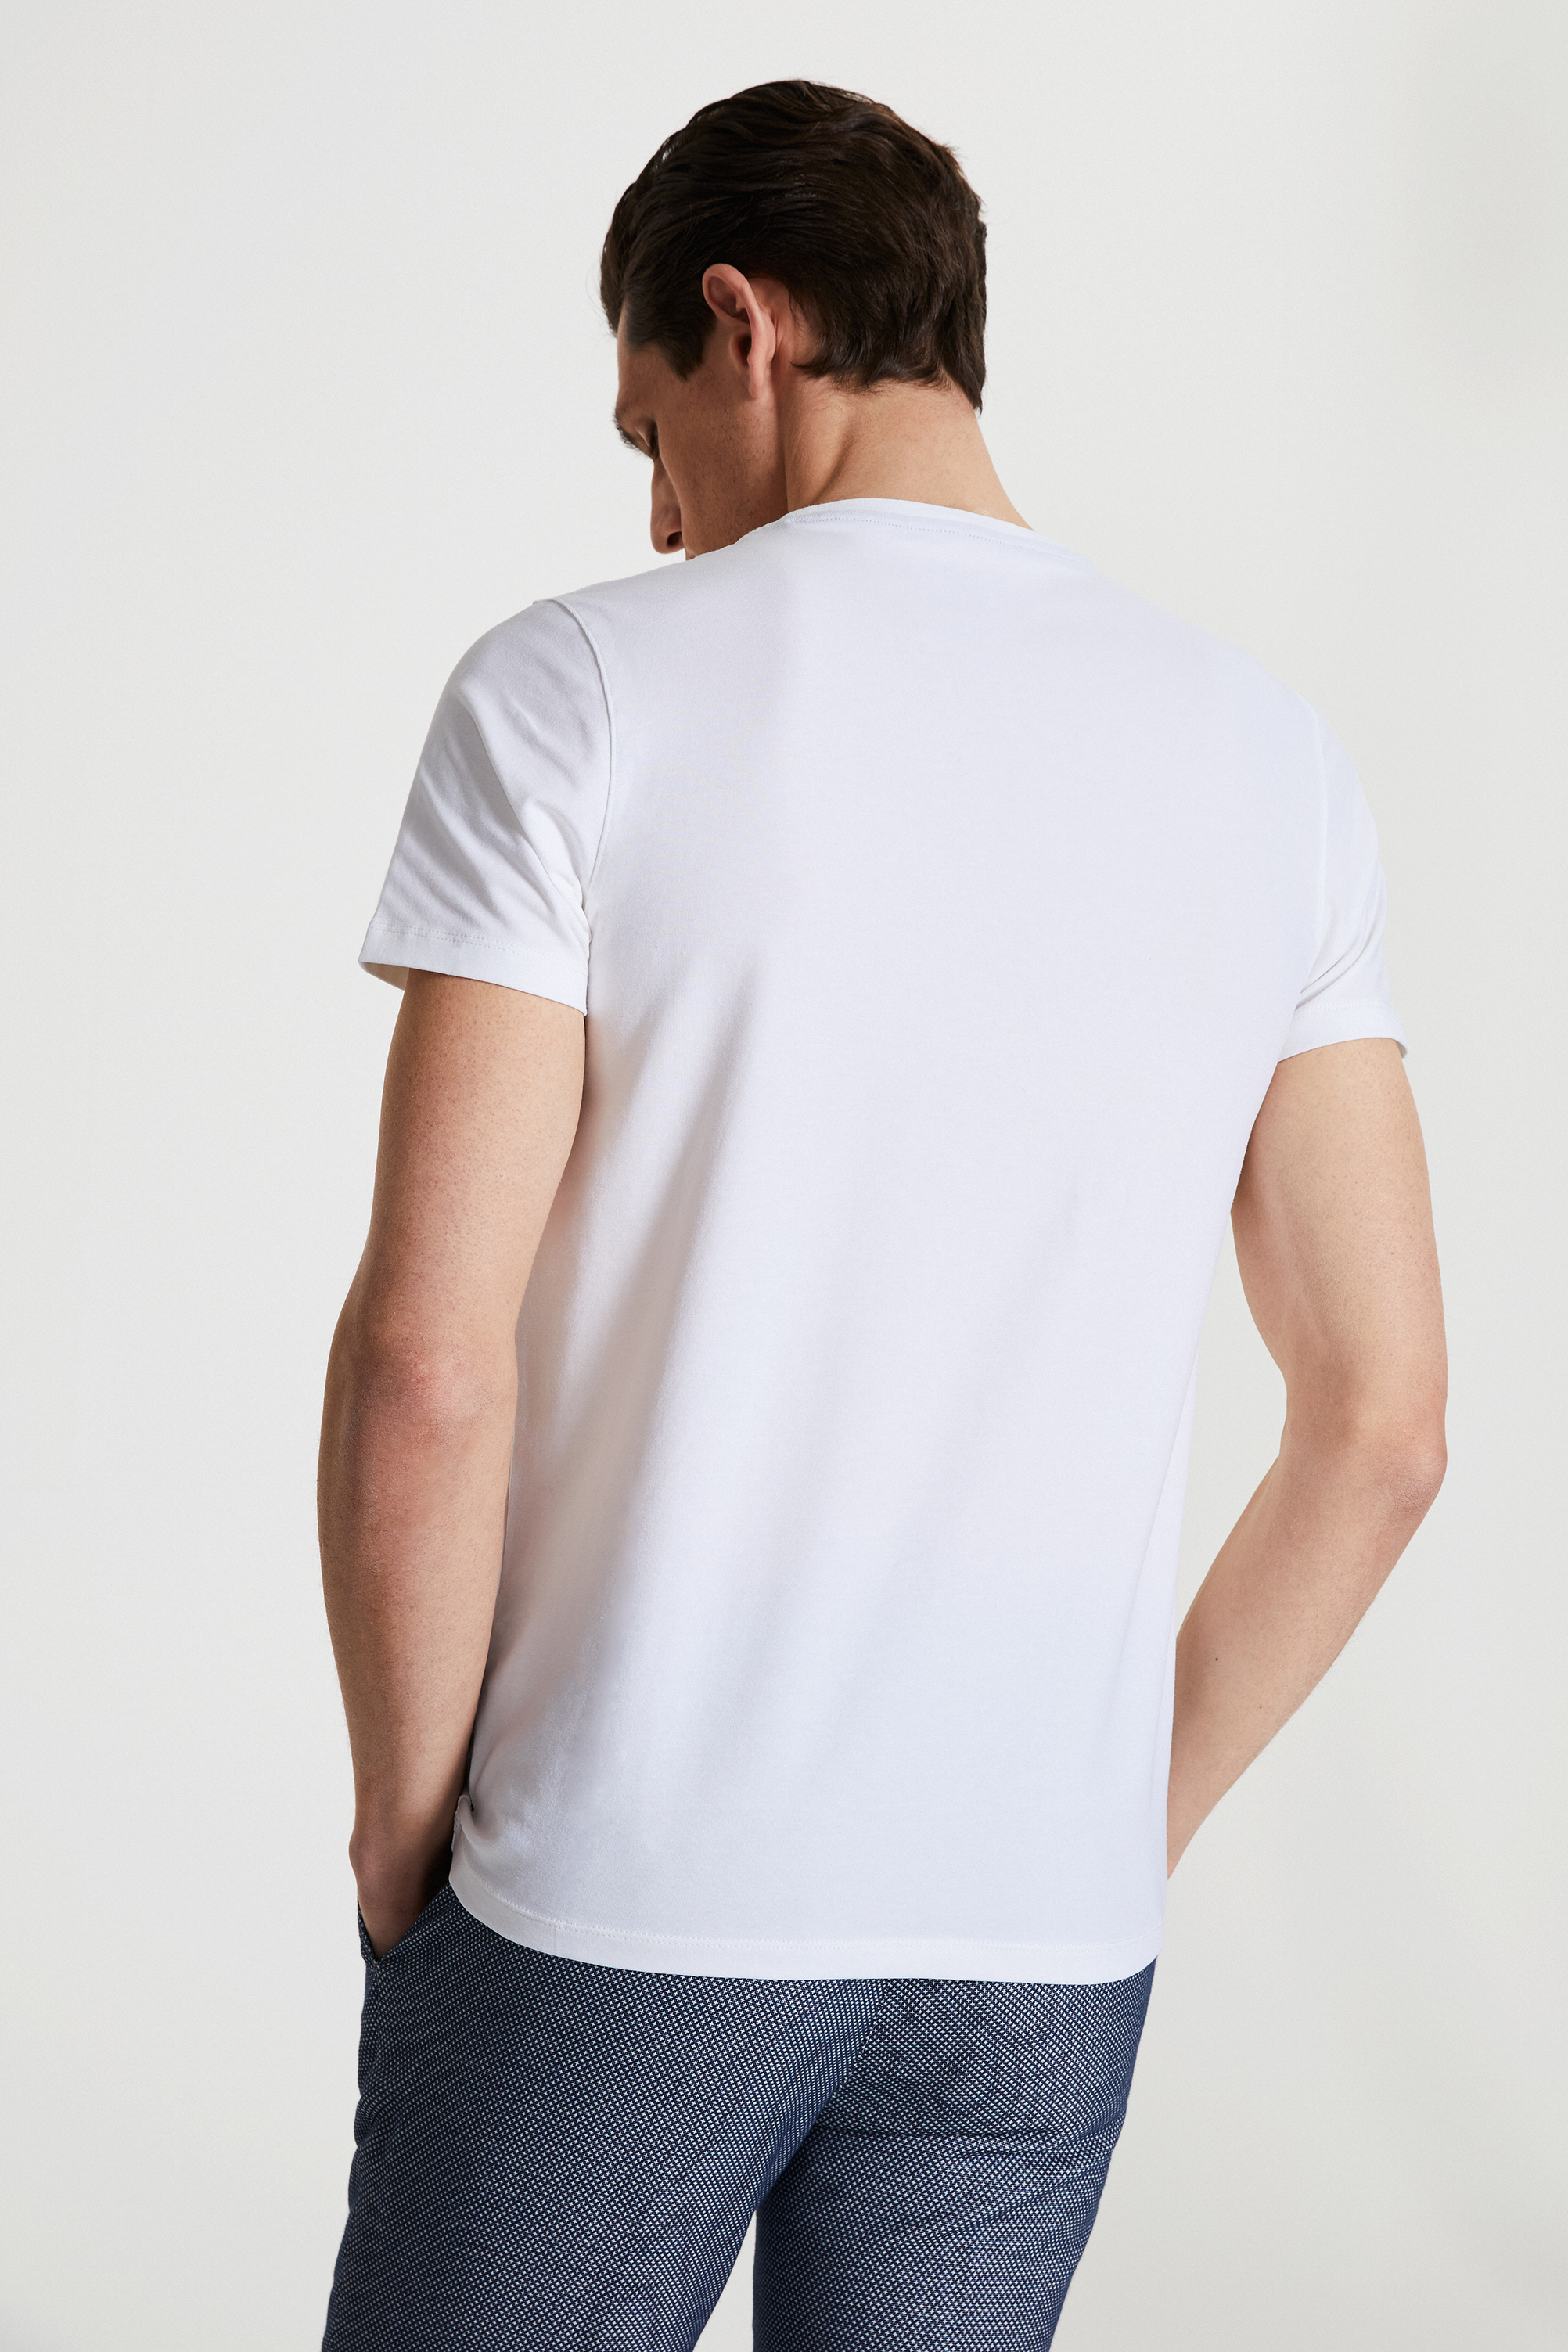 Damat Tween Tween Beyaz Baskılı T-shirt. 3